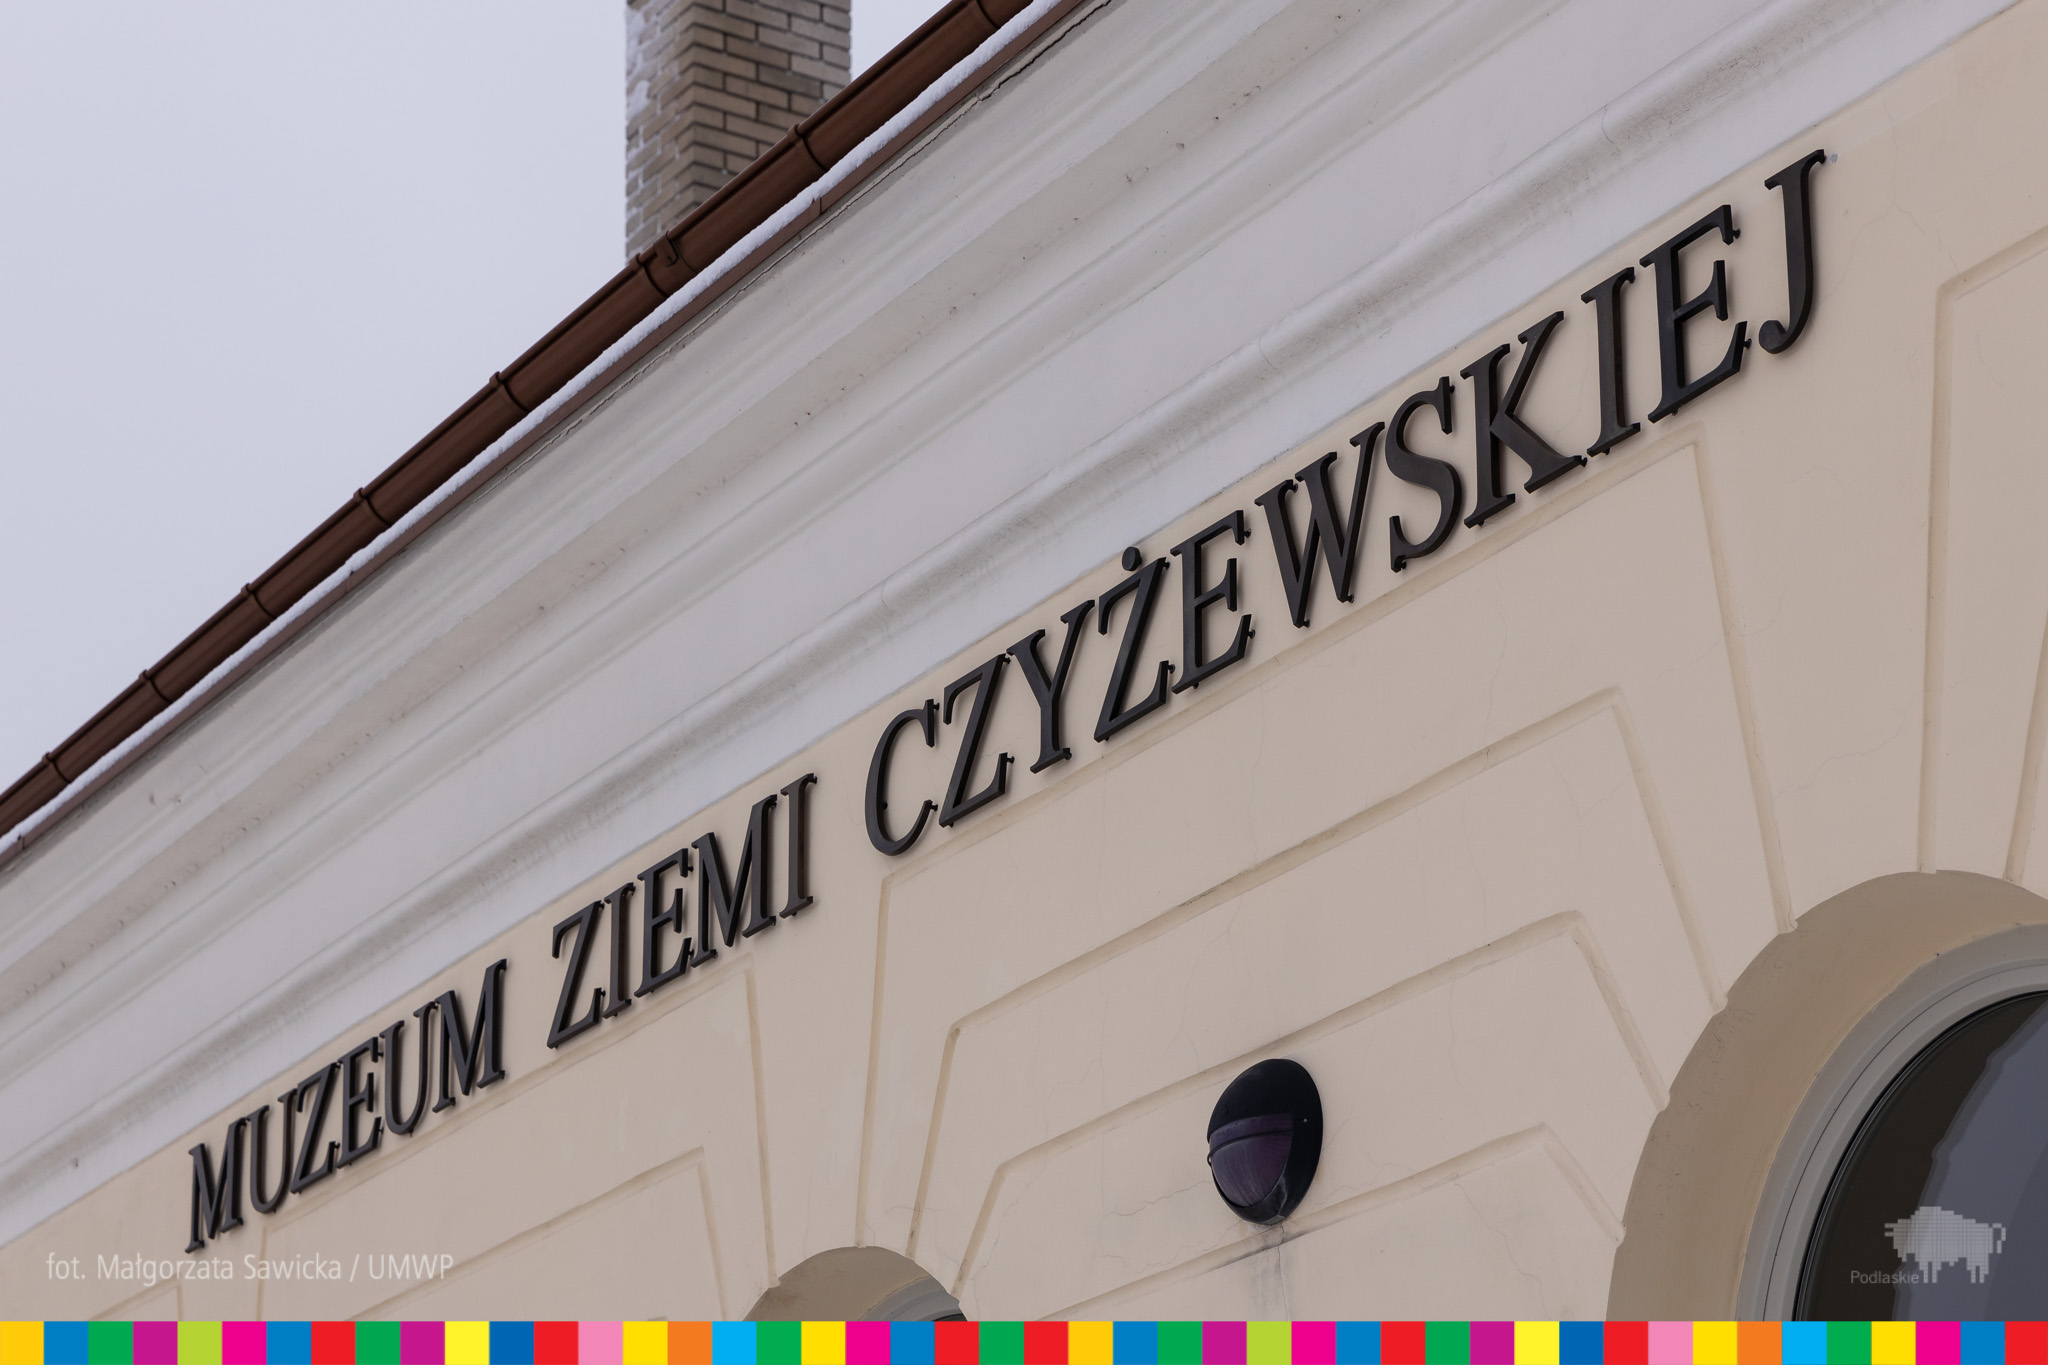 Kawałek elawacji budynku z napisem Muzeum Ziemi Czyżewskiej